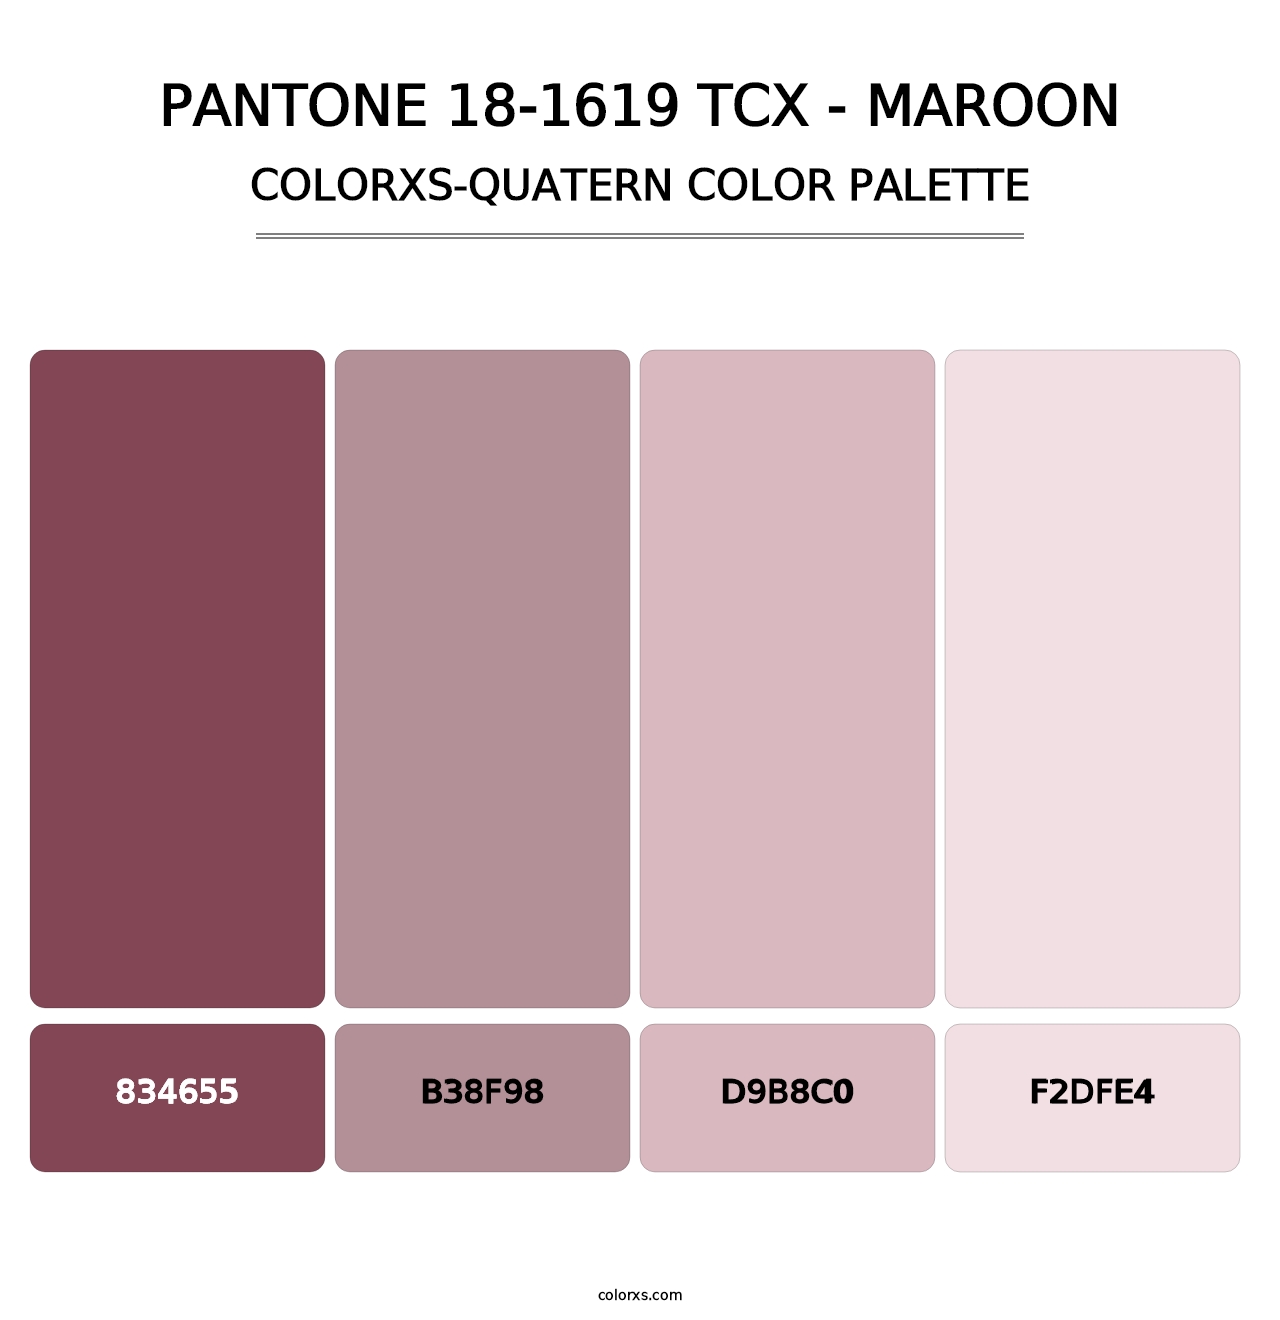 PANTONE 18-1619 TCX - Maroon - Colorxs Quatern Palette